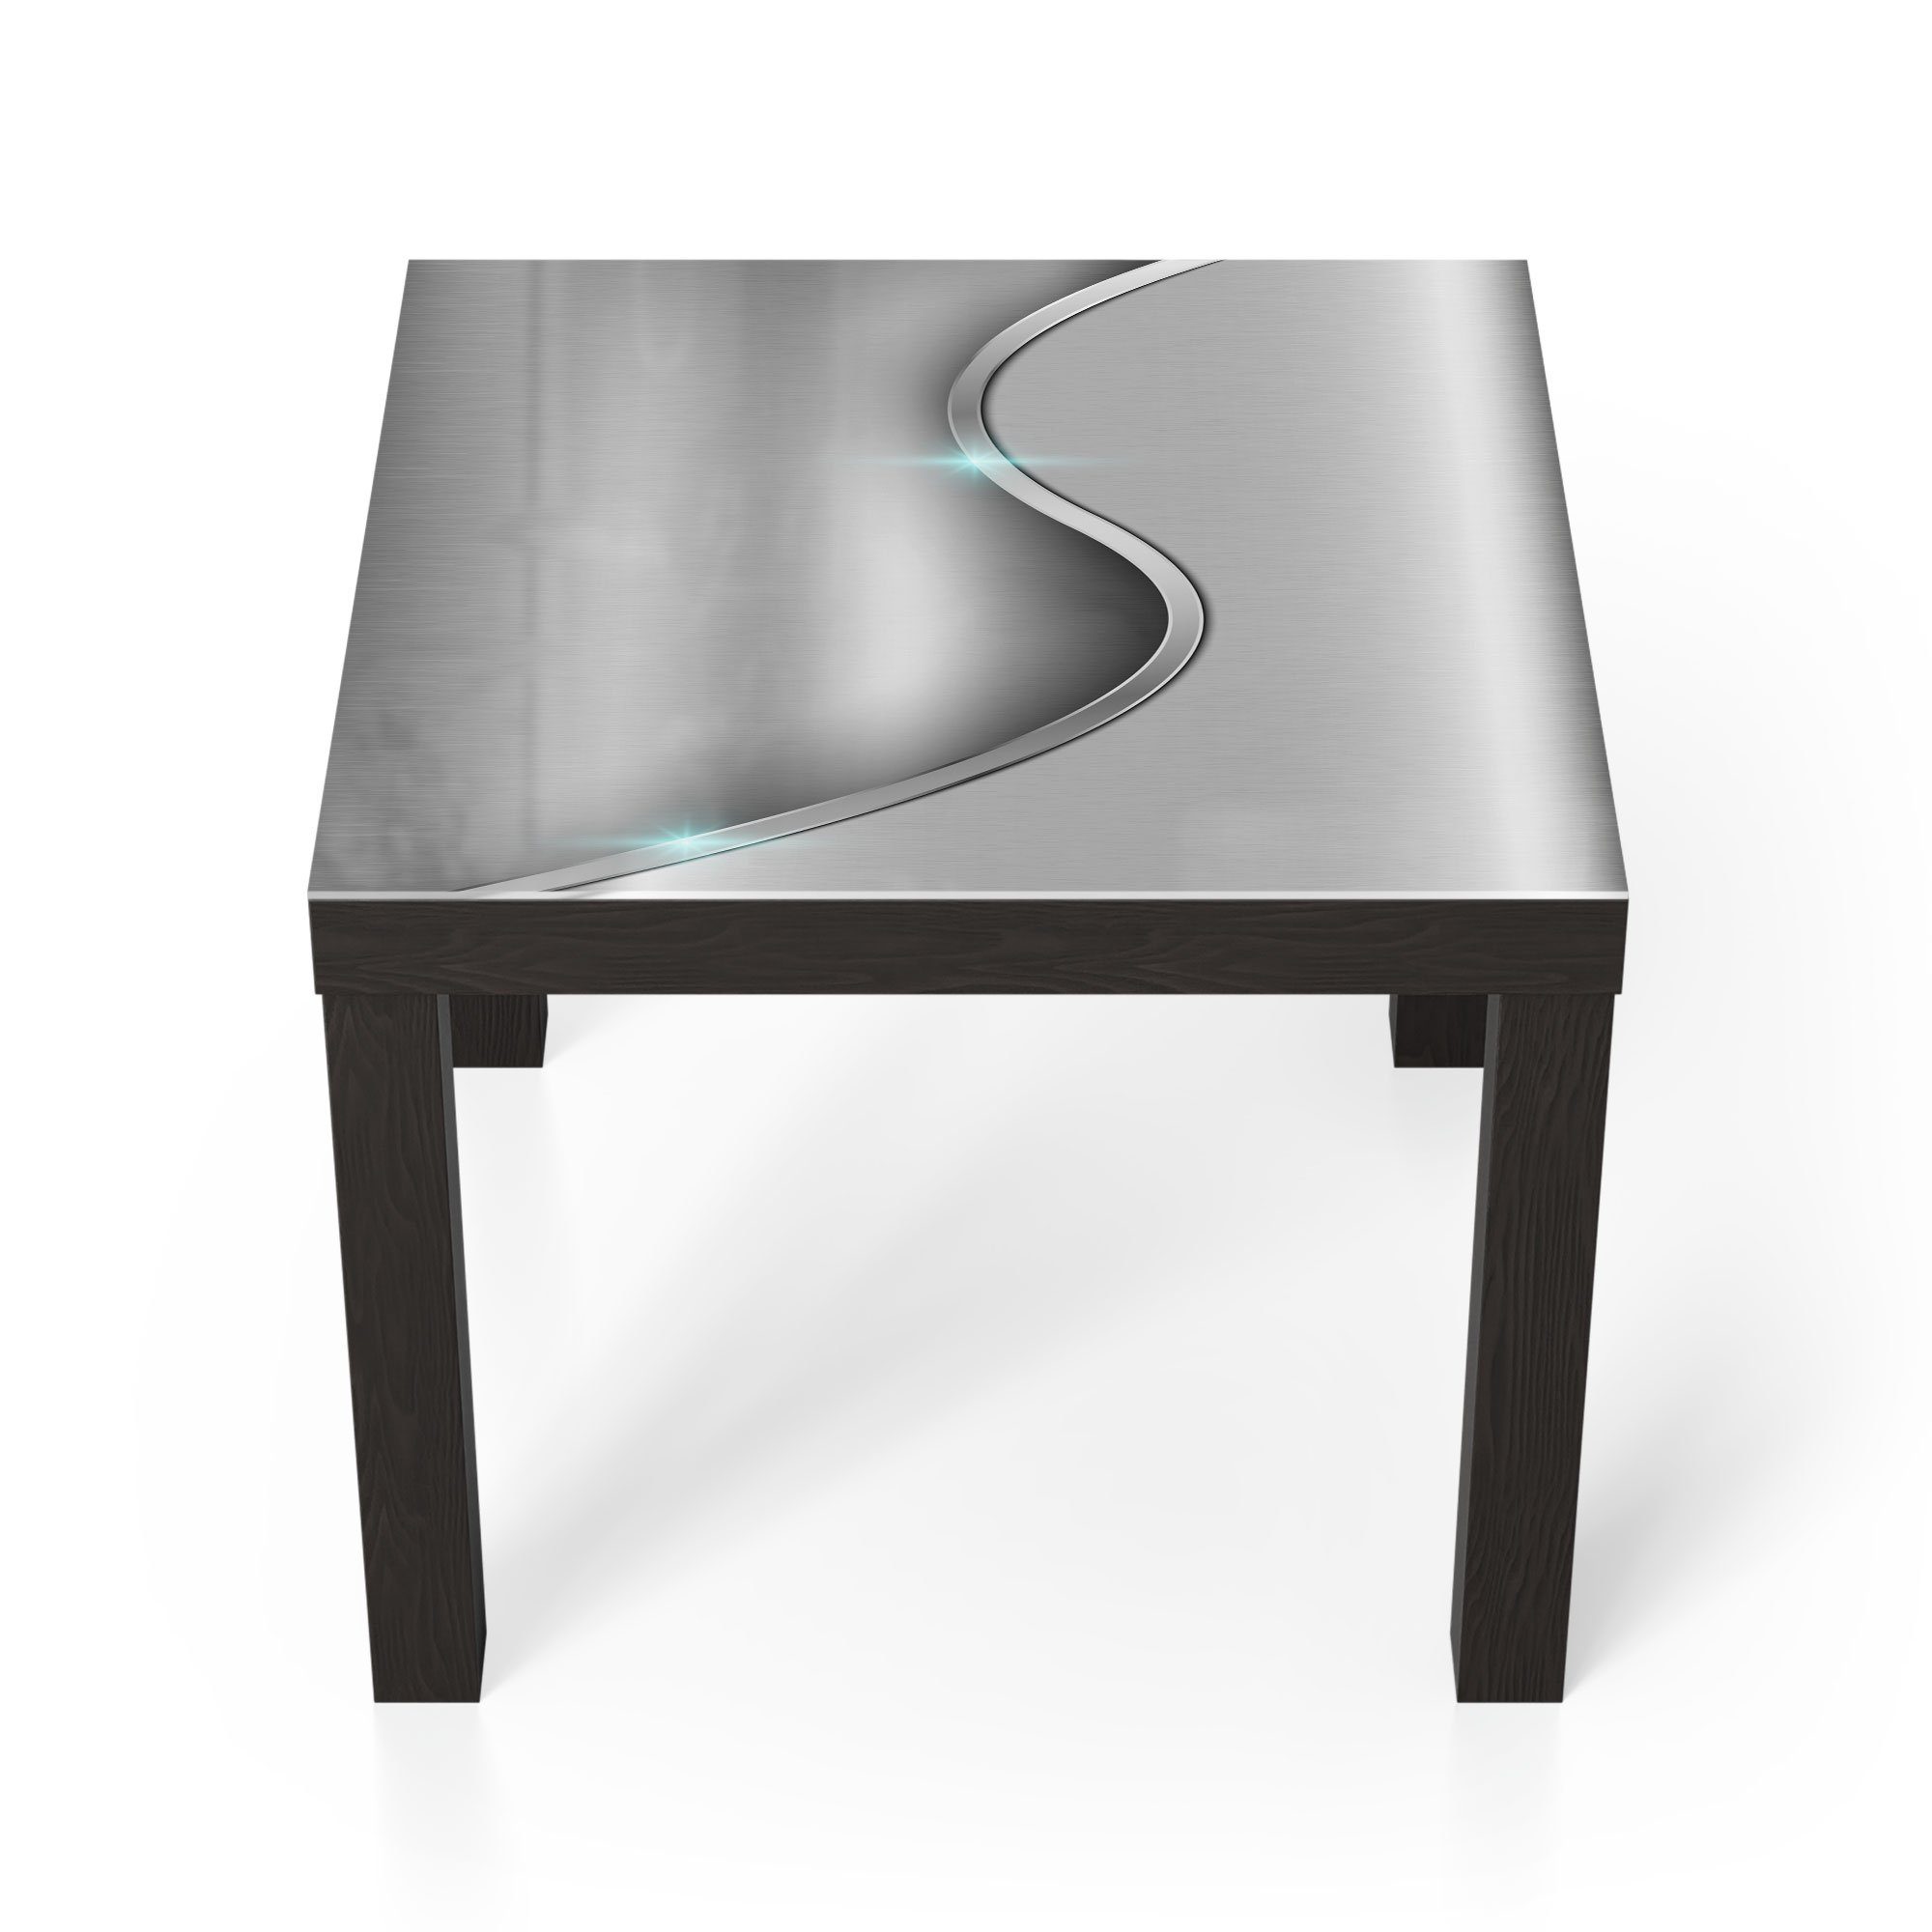 DEQORI Couchtisch 'Polierte Oberfläche', Glas Beistelltisch Glastisch modern Schwarz